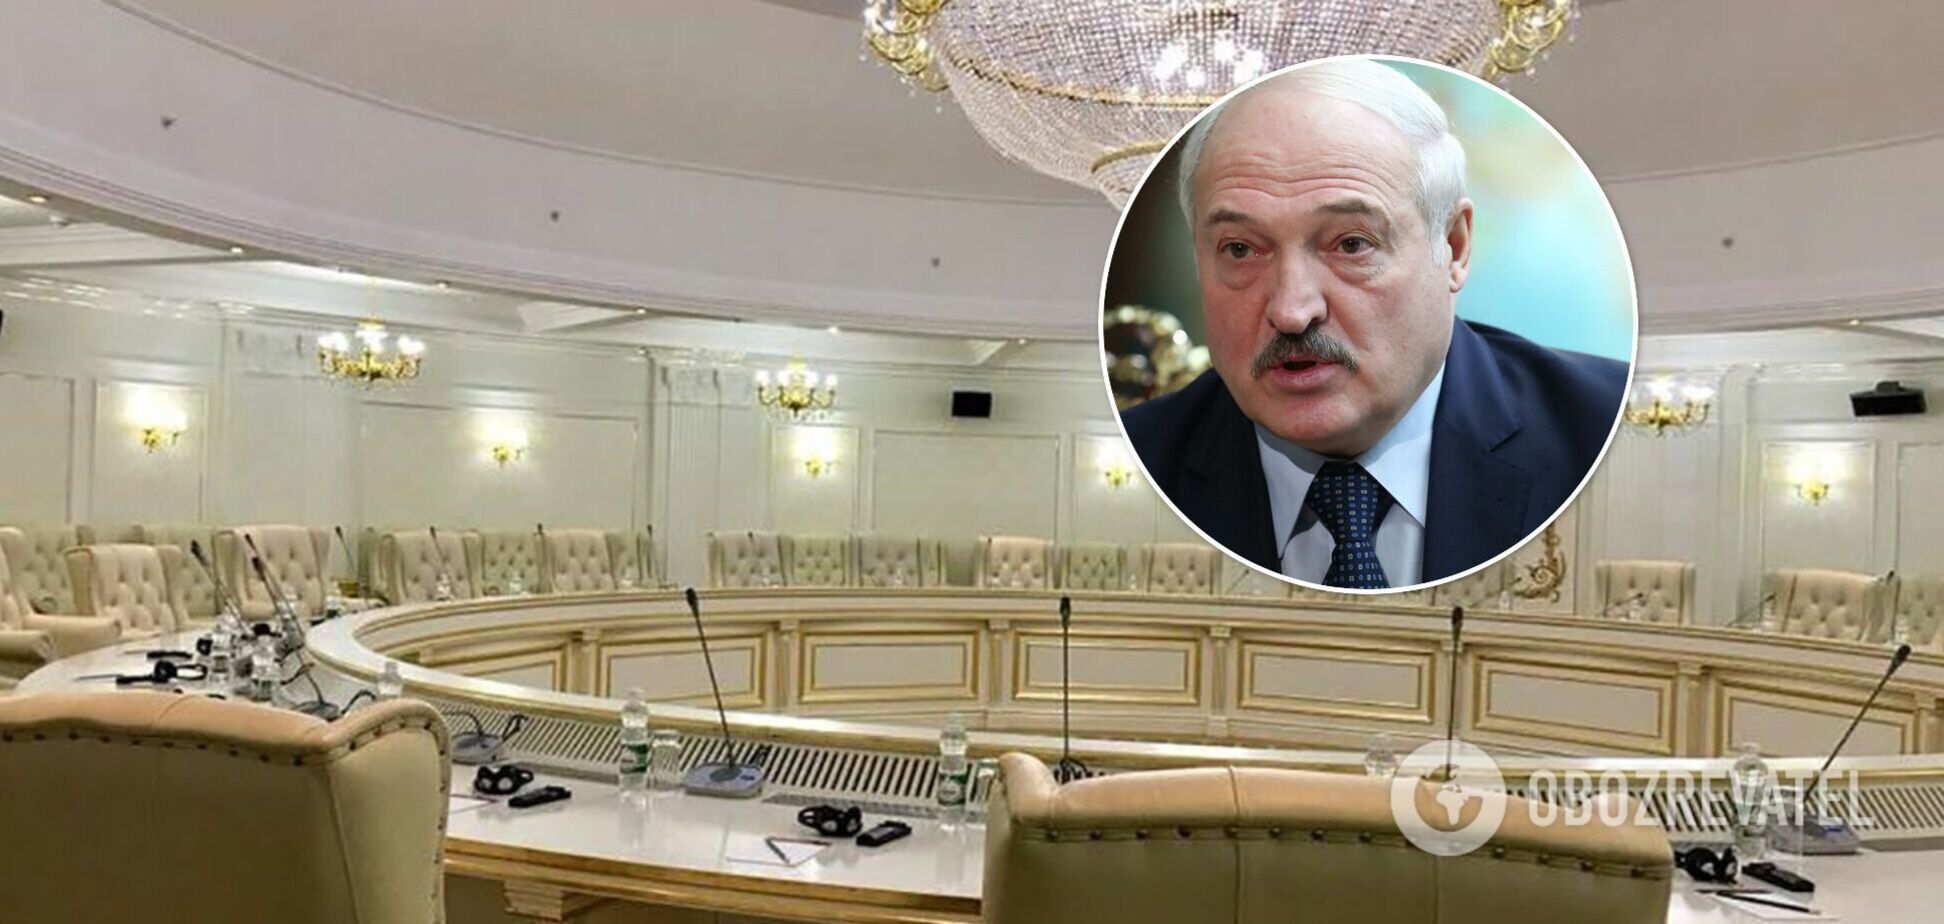 Лукашенко назвал 'несусветной глупостью' перенос из Минска переговоров по Донбассу. Видео